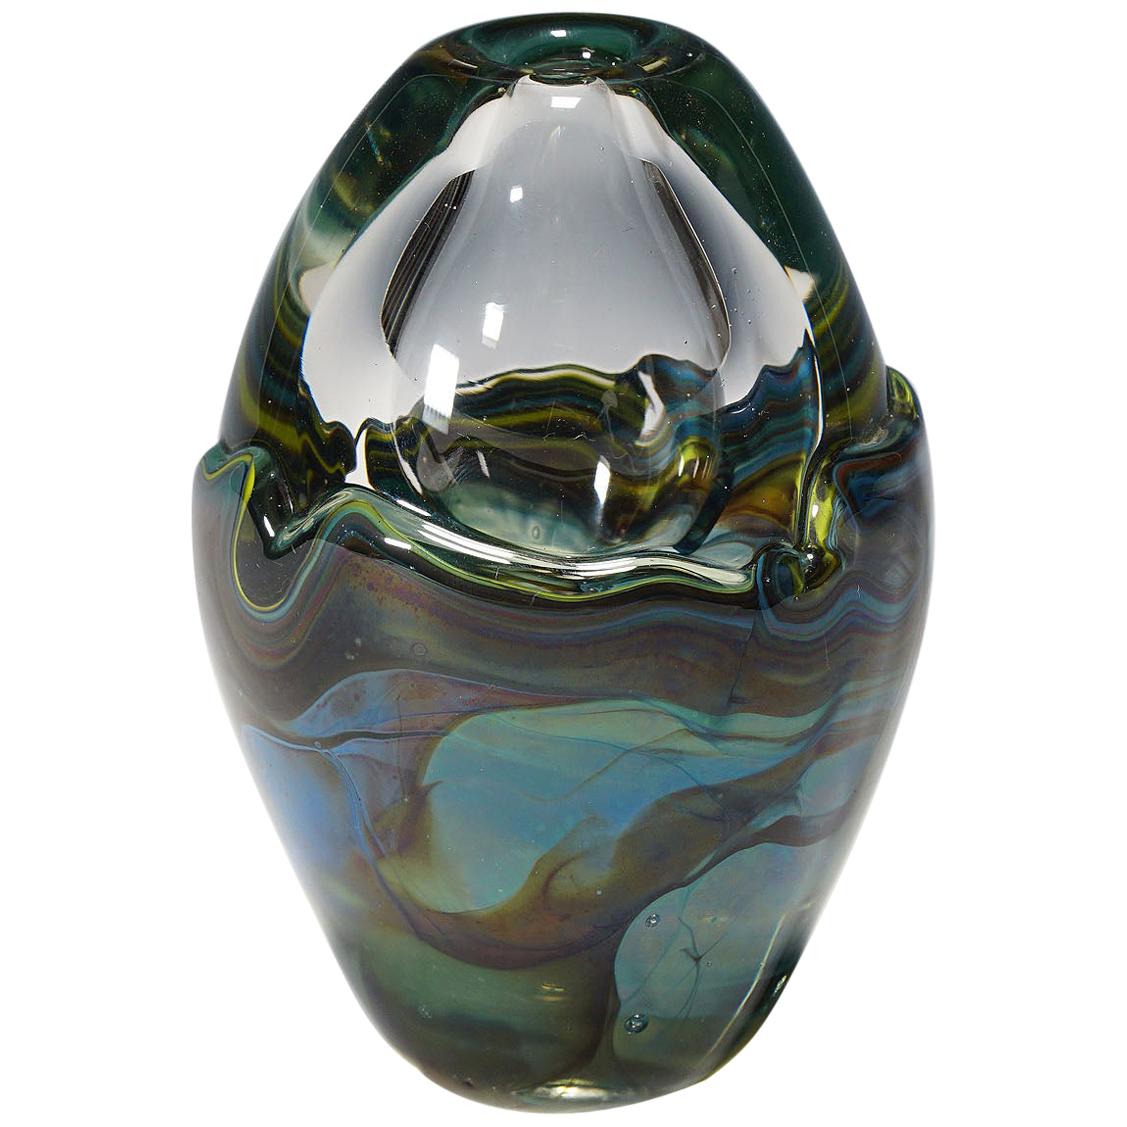 Vintage Vase Designed by German Artist Udo Edelmann, 1988 For Sale